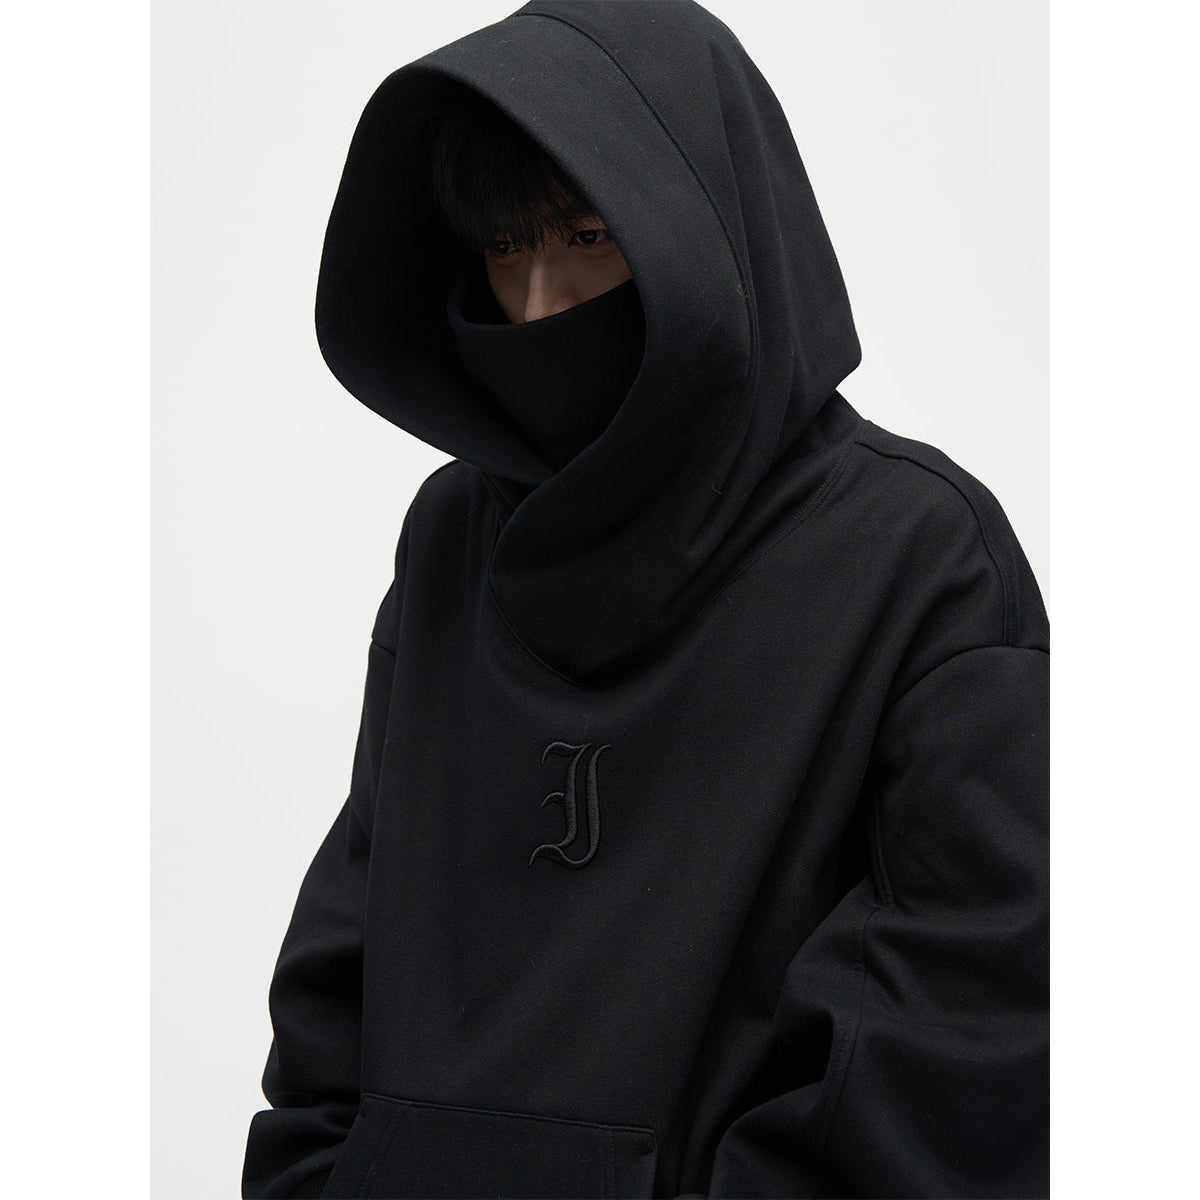 77Flight Ninja Style Hoodie Korean Street Fashion Hoodie By 77Flight Shop Online at OH Vault